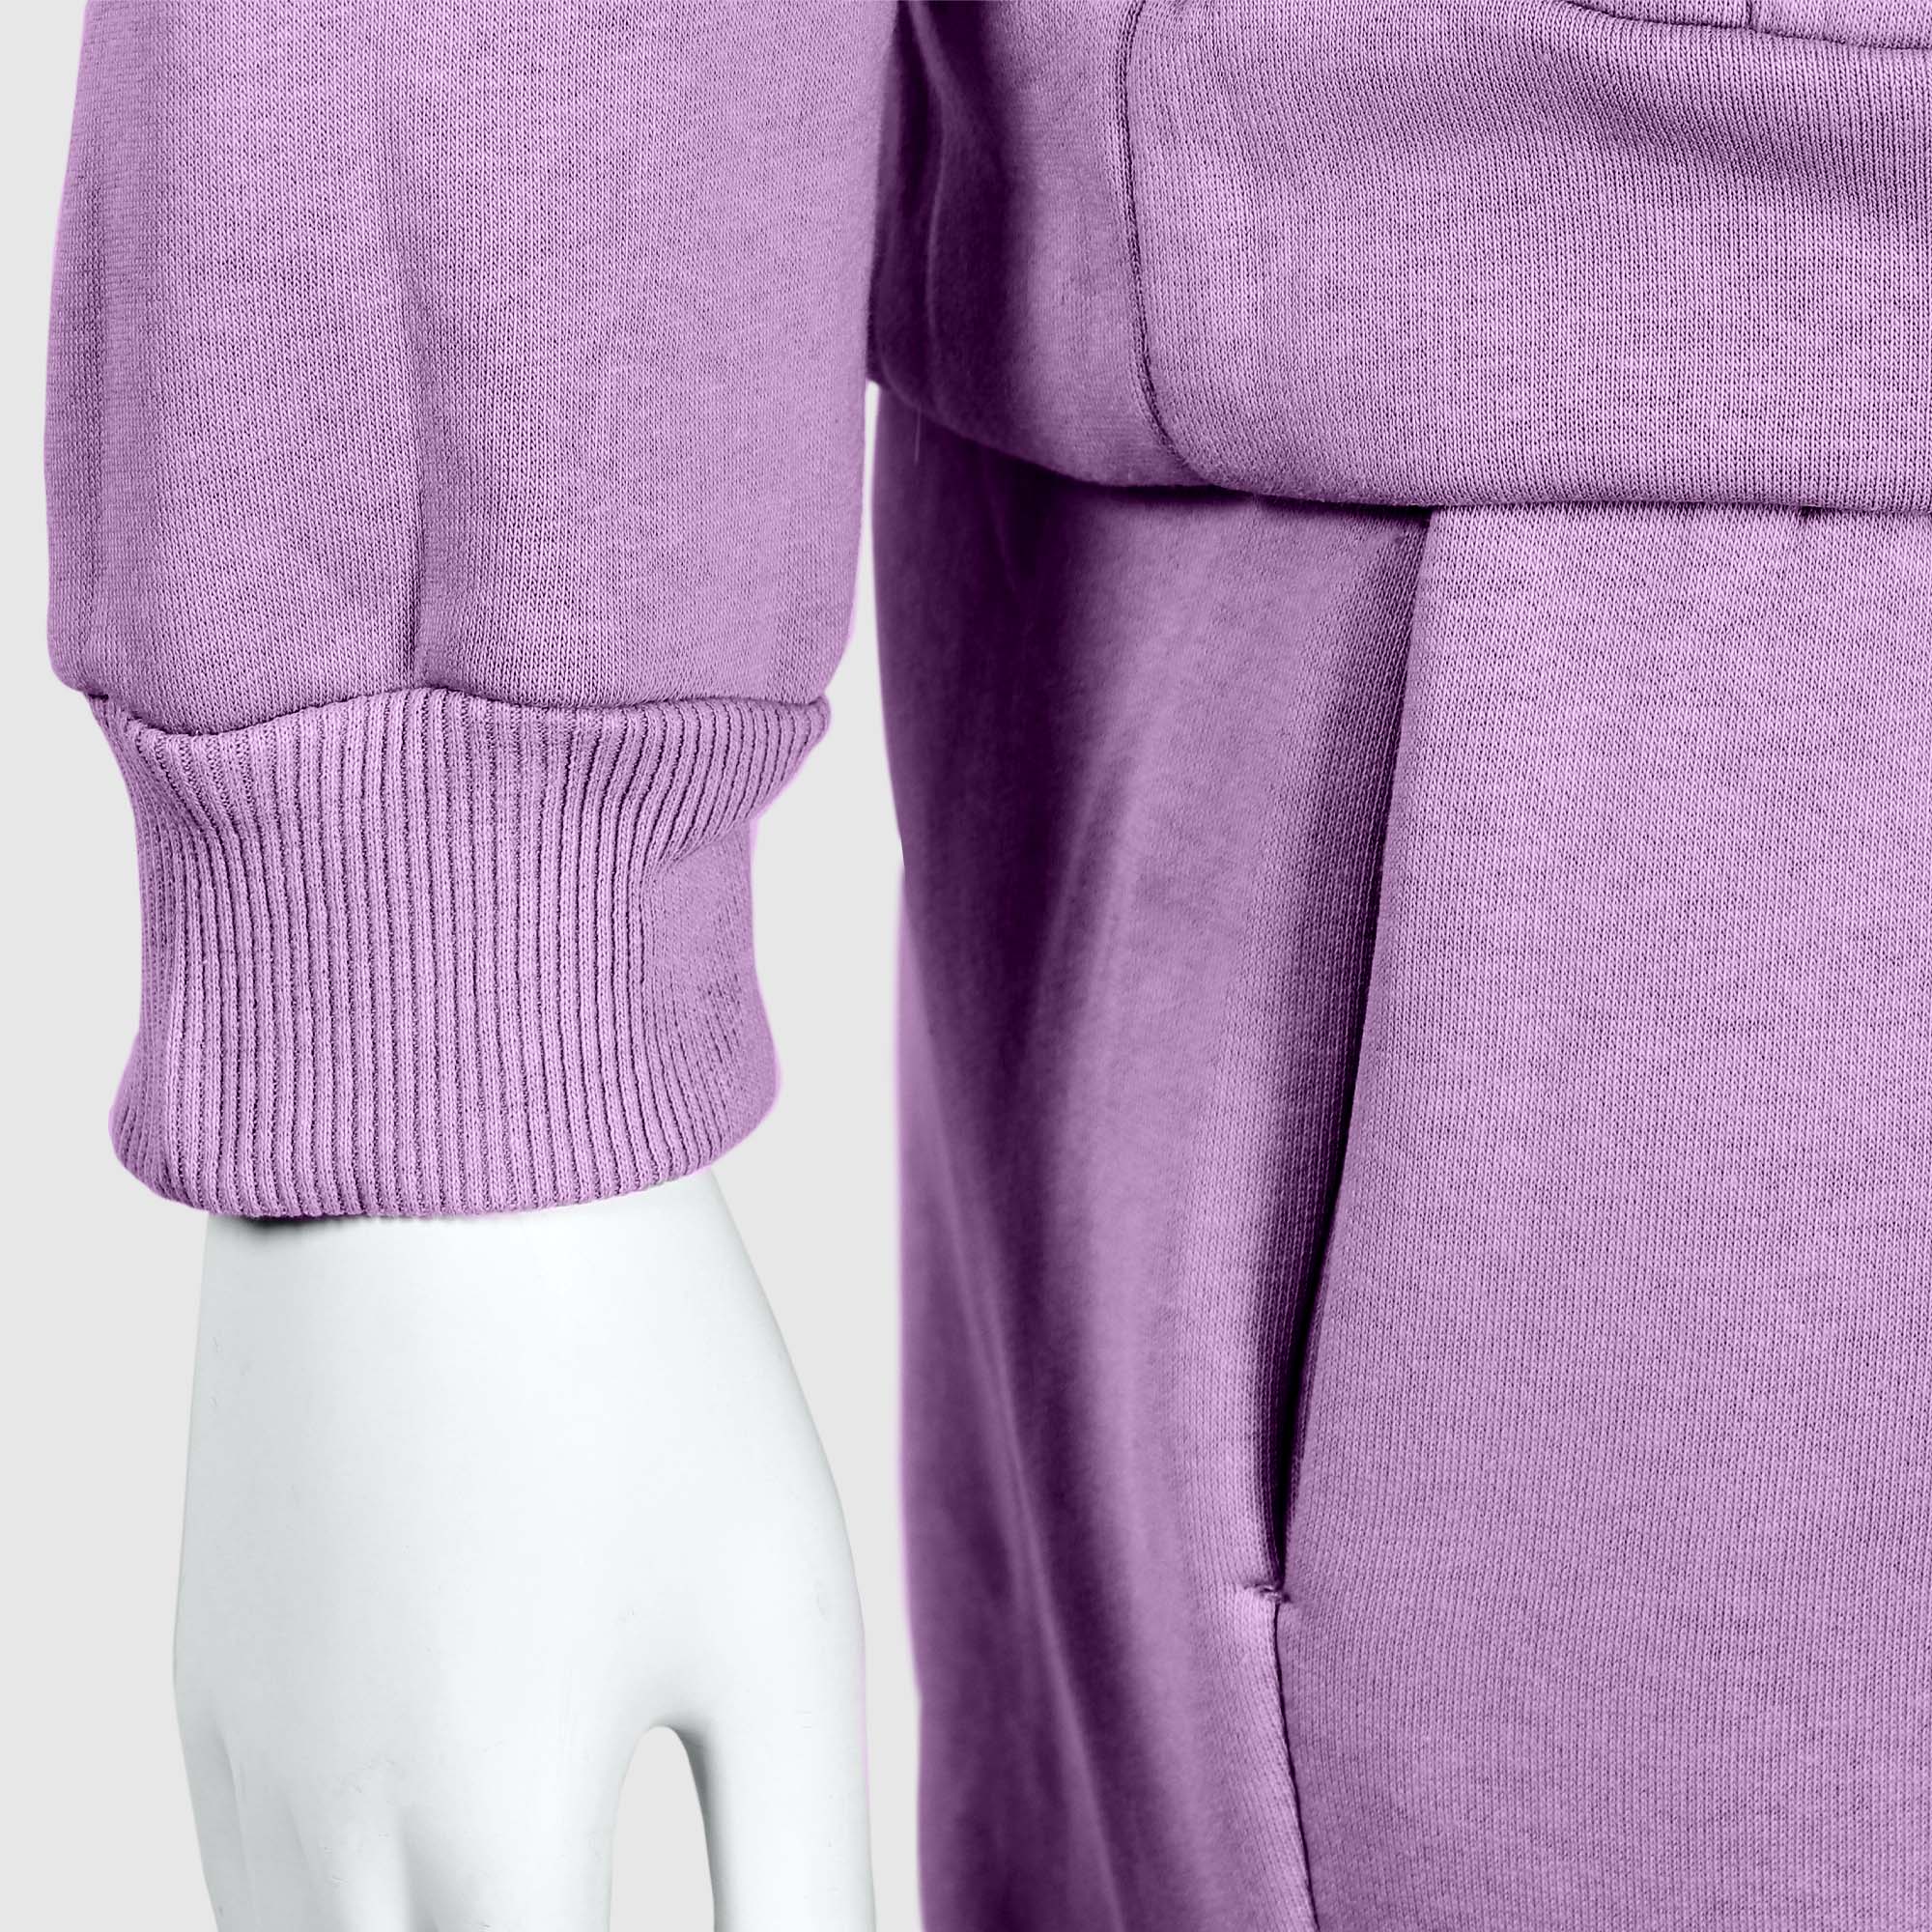 Женские брюки Svelly фиолетовые, цвет фиолетовый, размер 46 - фото 6